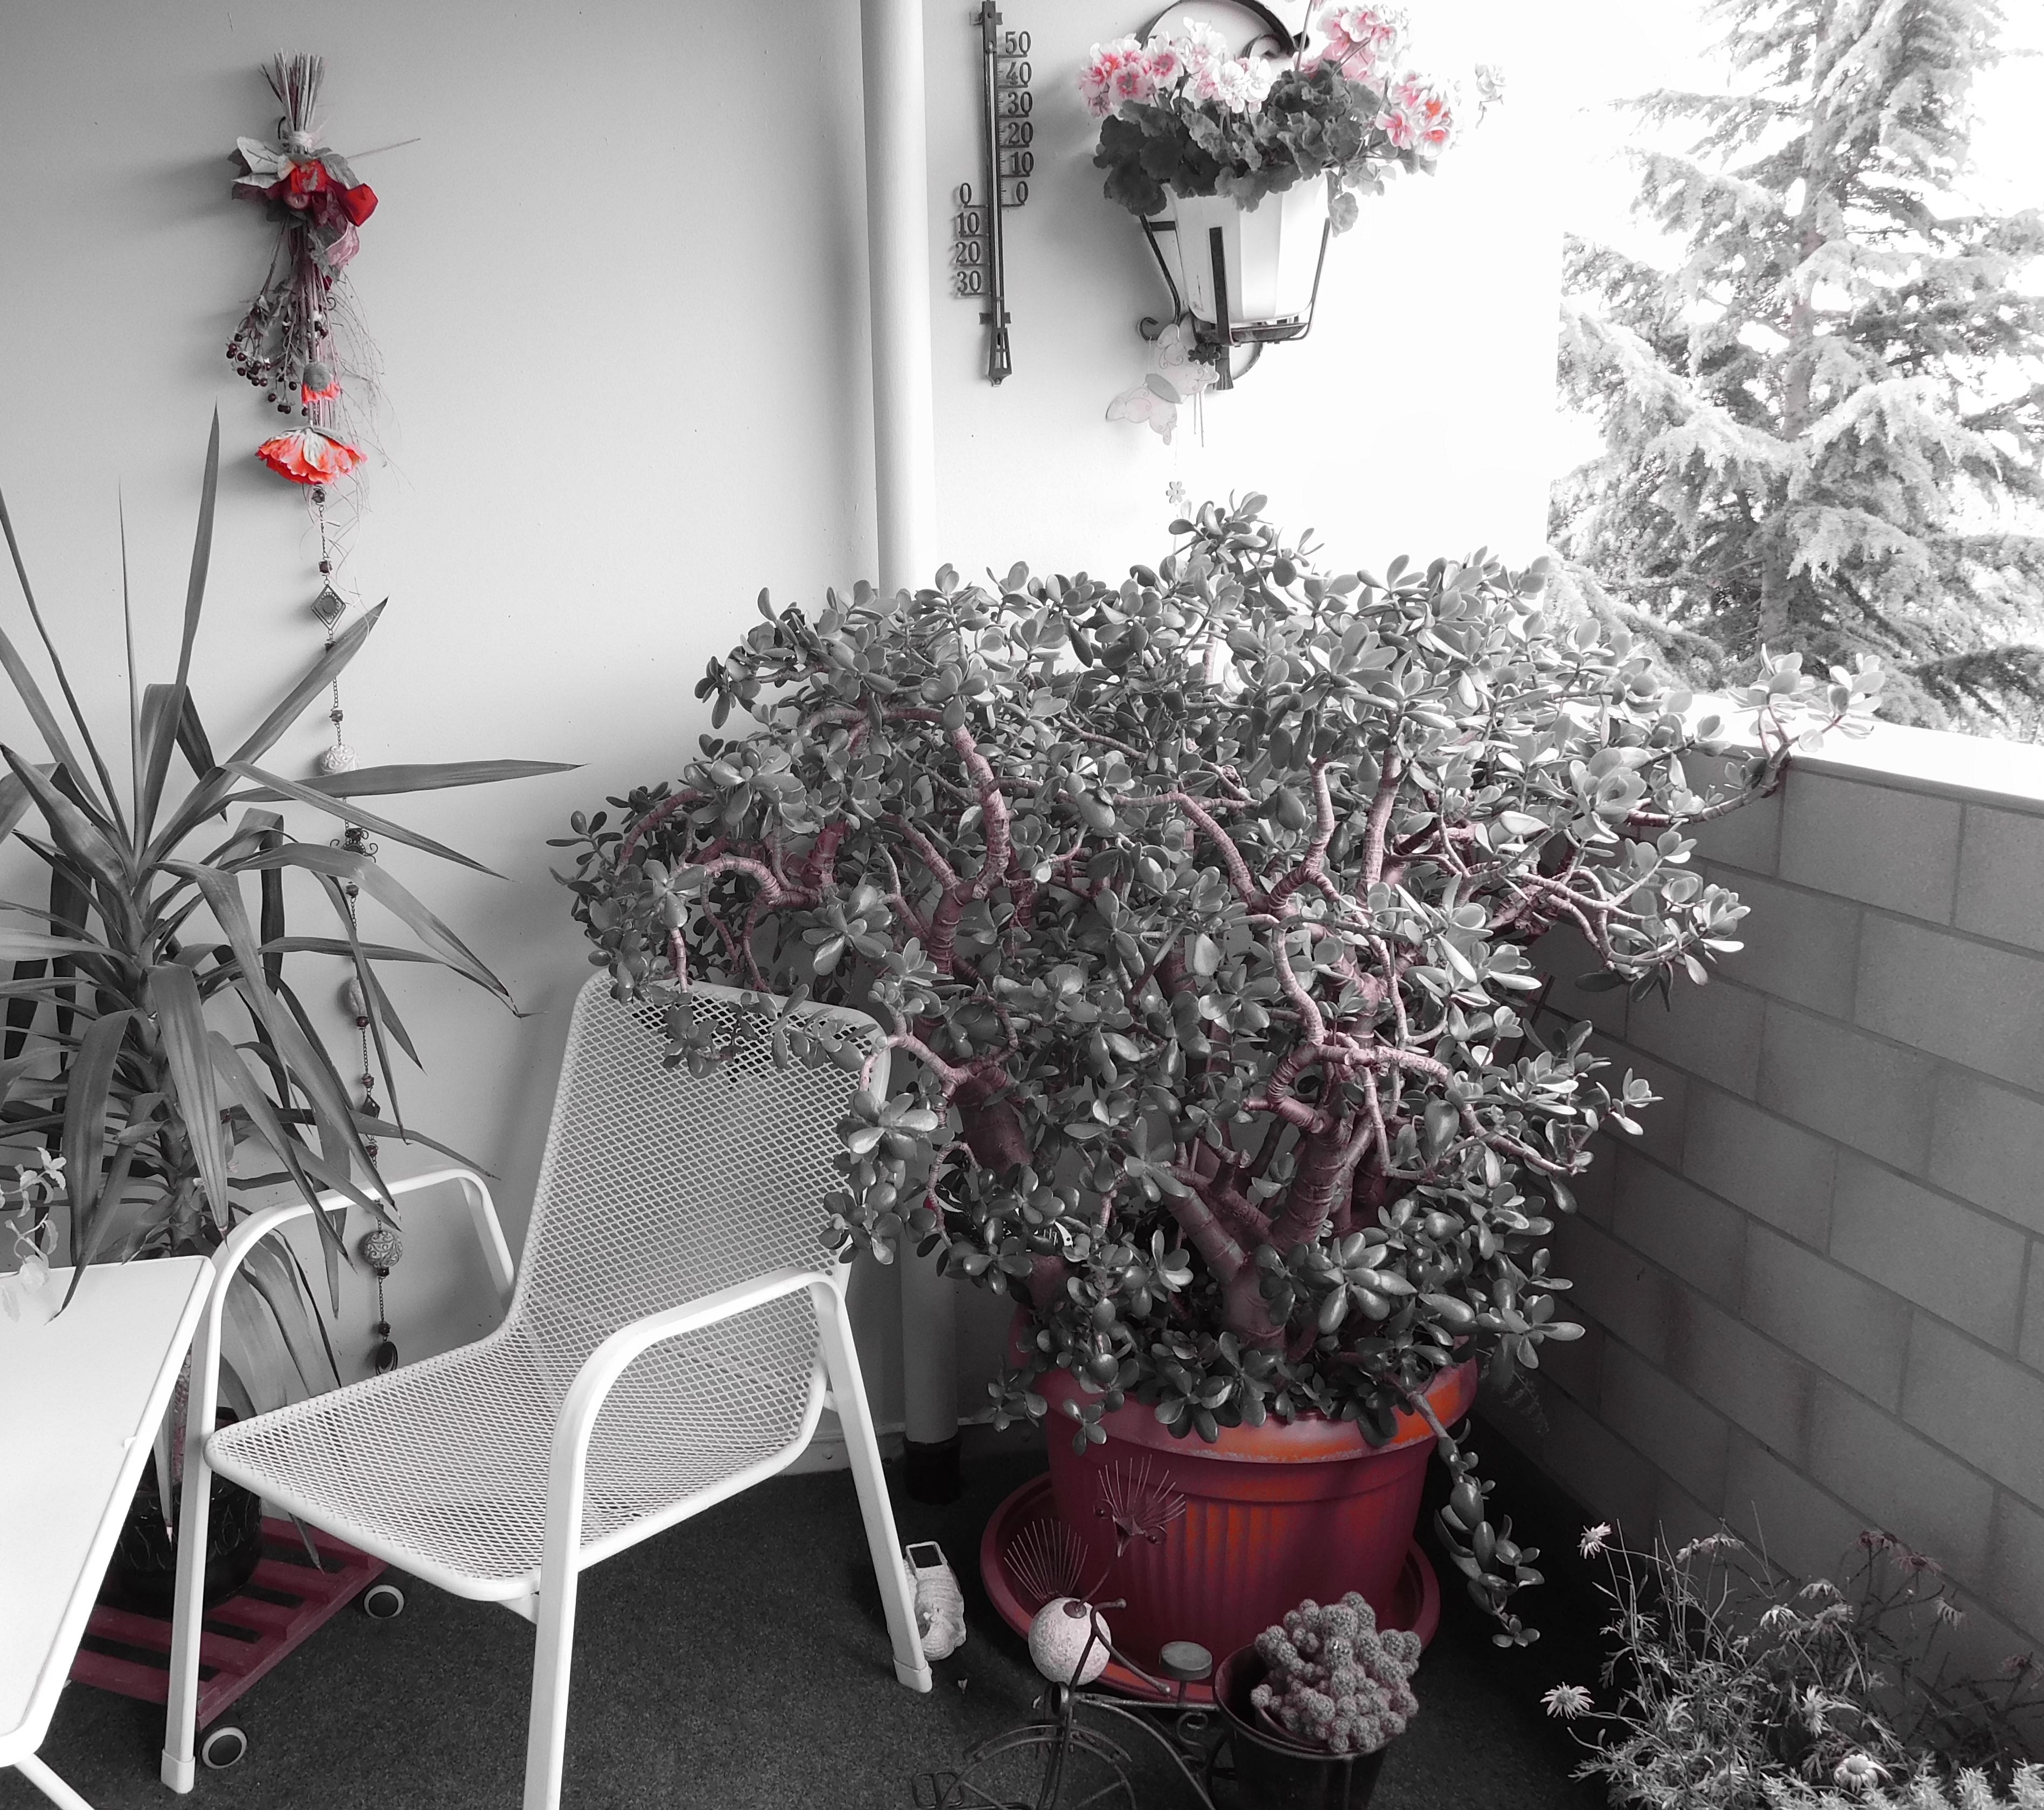 Die ersten Pflanzen stehen draußen, hoffe sie halten den Kälteeinbruch aus #geldbaum #obergeschoss #pflanzen #balkon